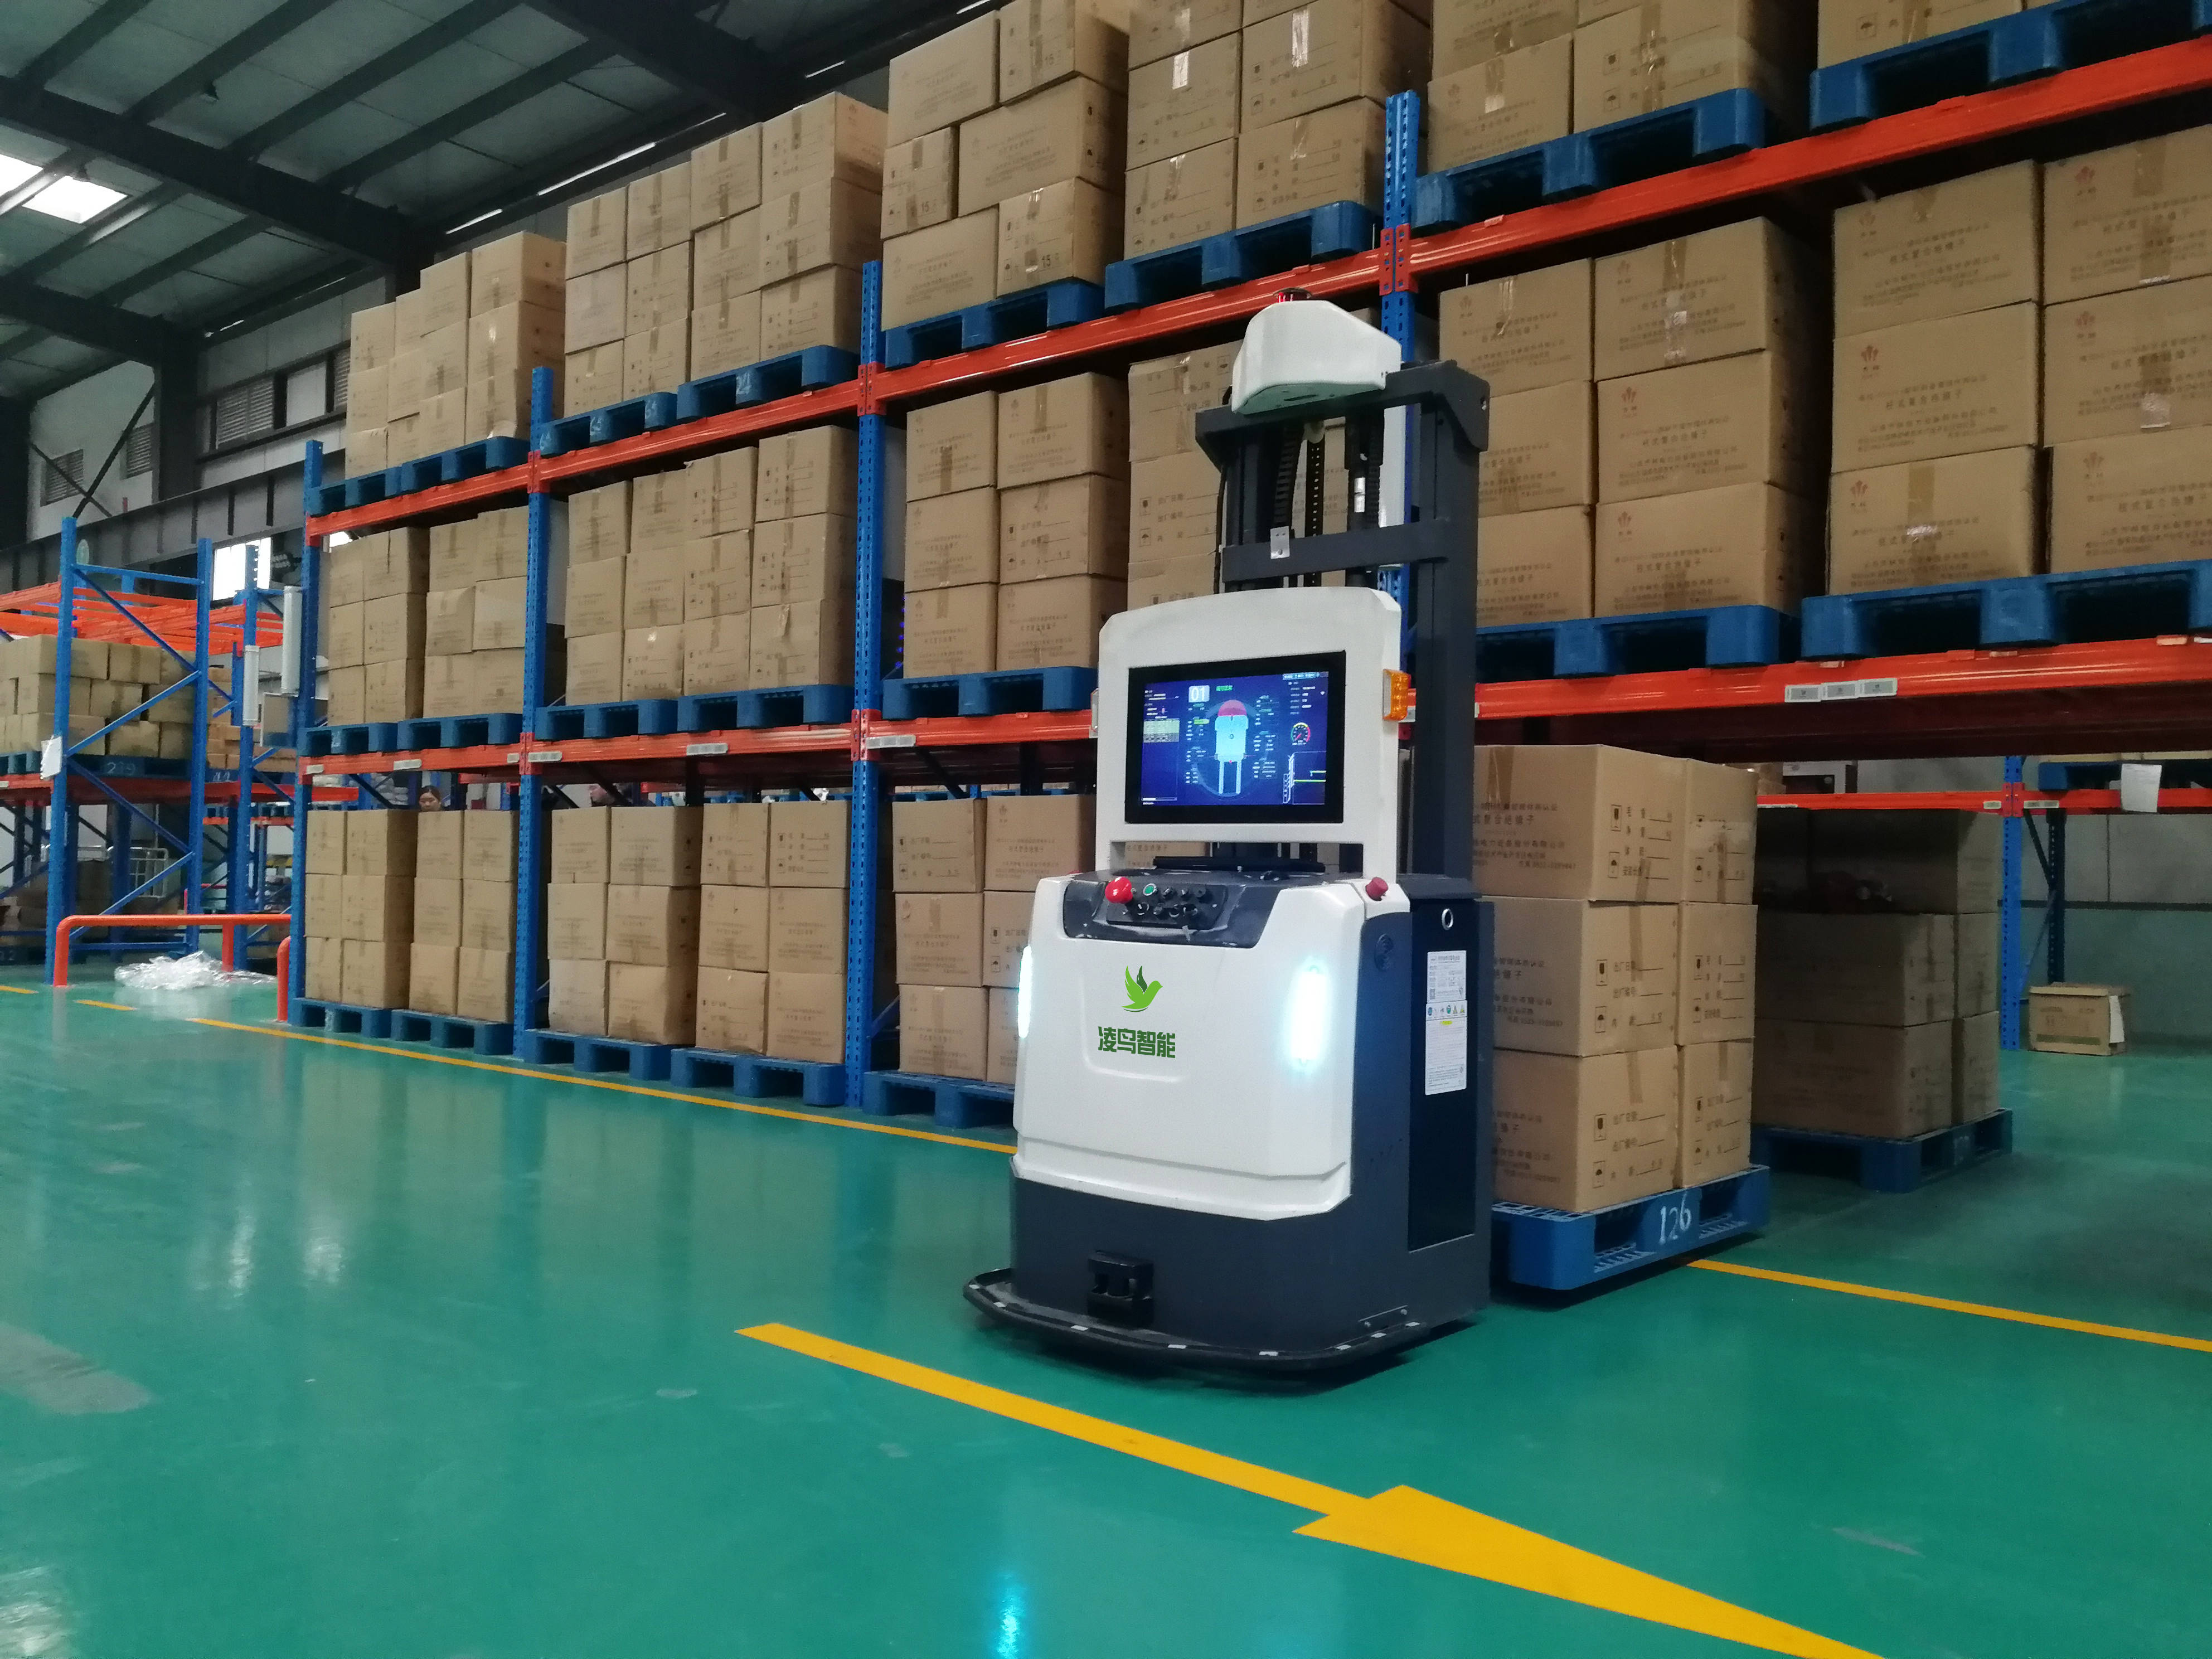 智能搬运机器人开启柔性物流新市场